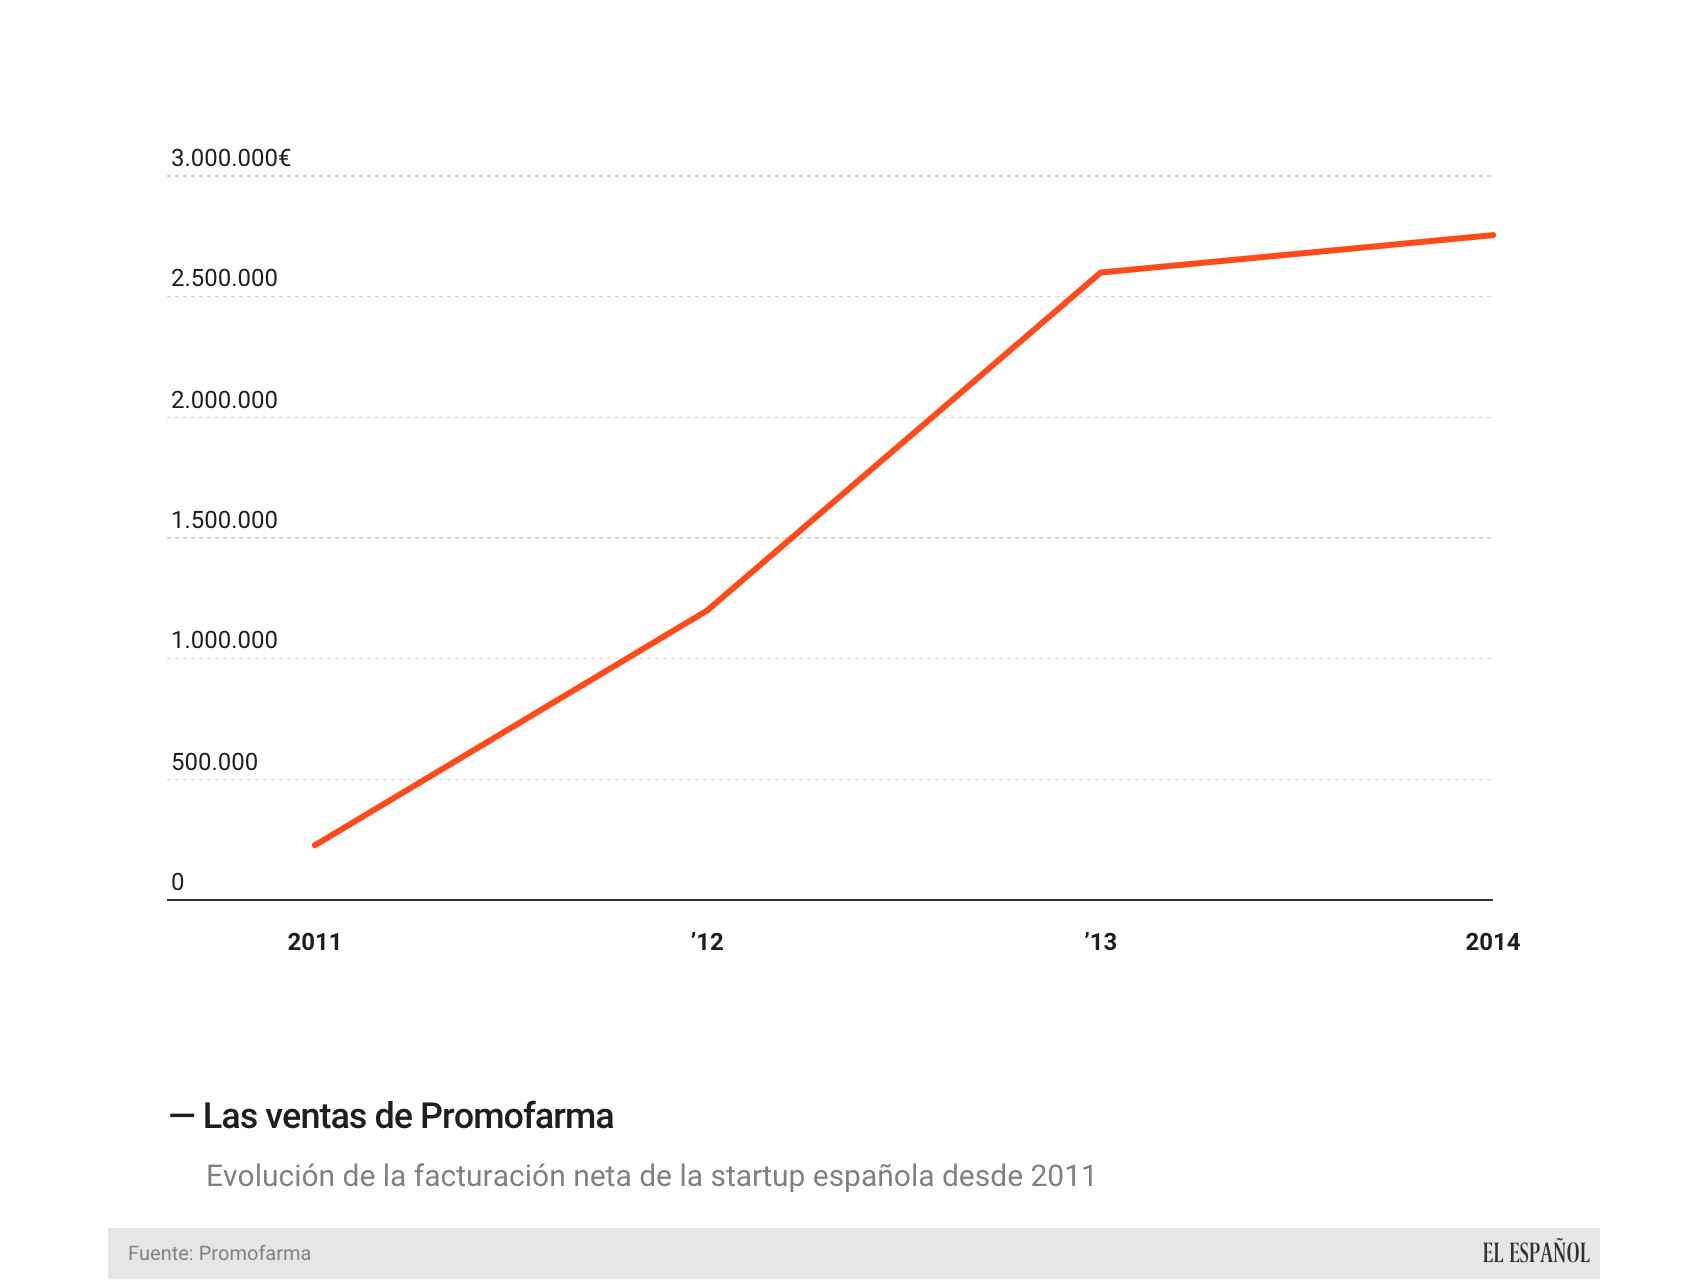 La evolución de las ventas de Promofarma desde 2011.